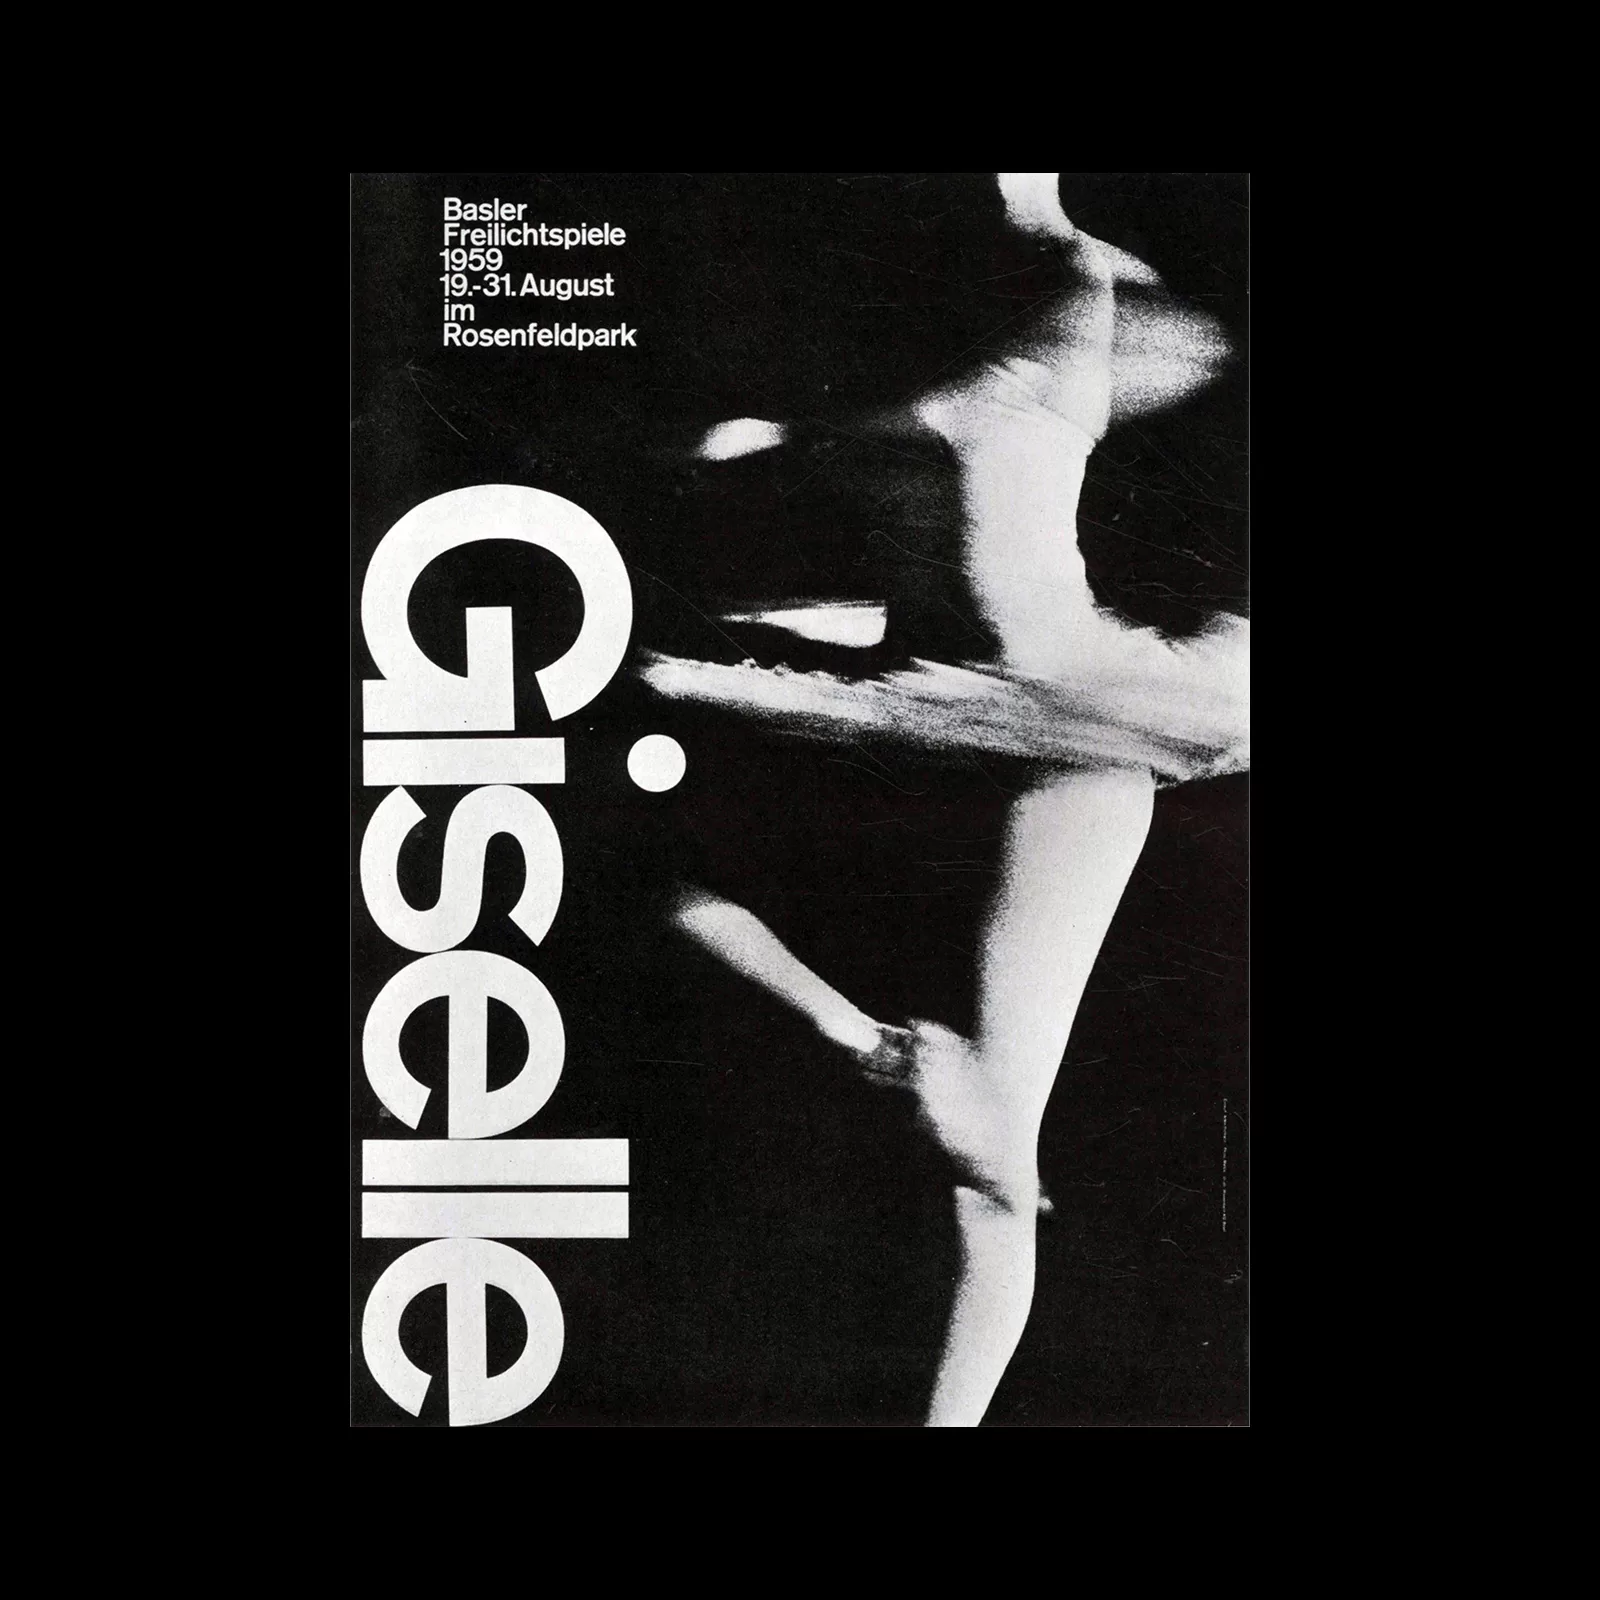 Armin Hofmann, Giselle ballet, Basler Freilichtspiele poster, 1959, Scanned from Gebrauchsgraphik, 4, 1962